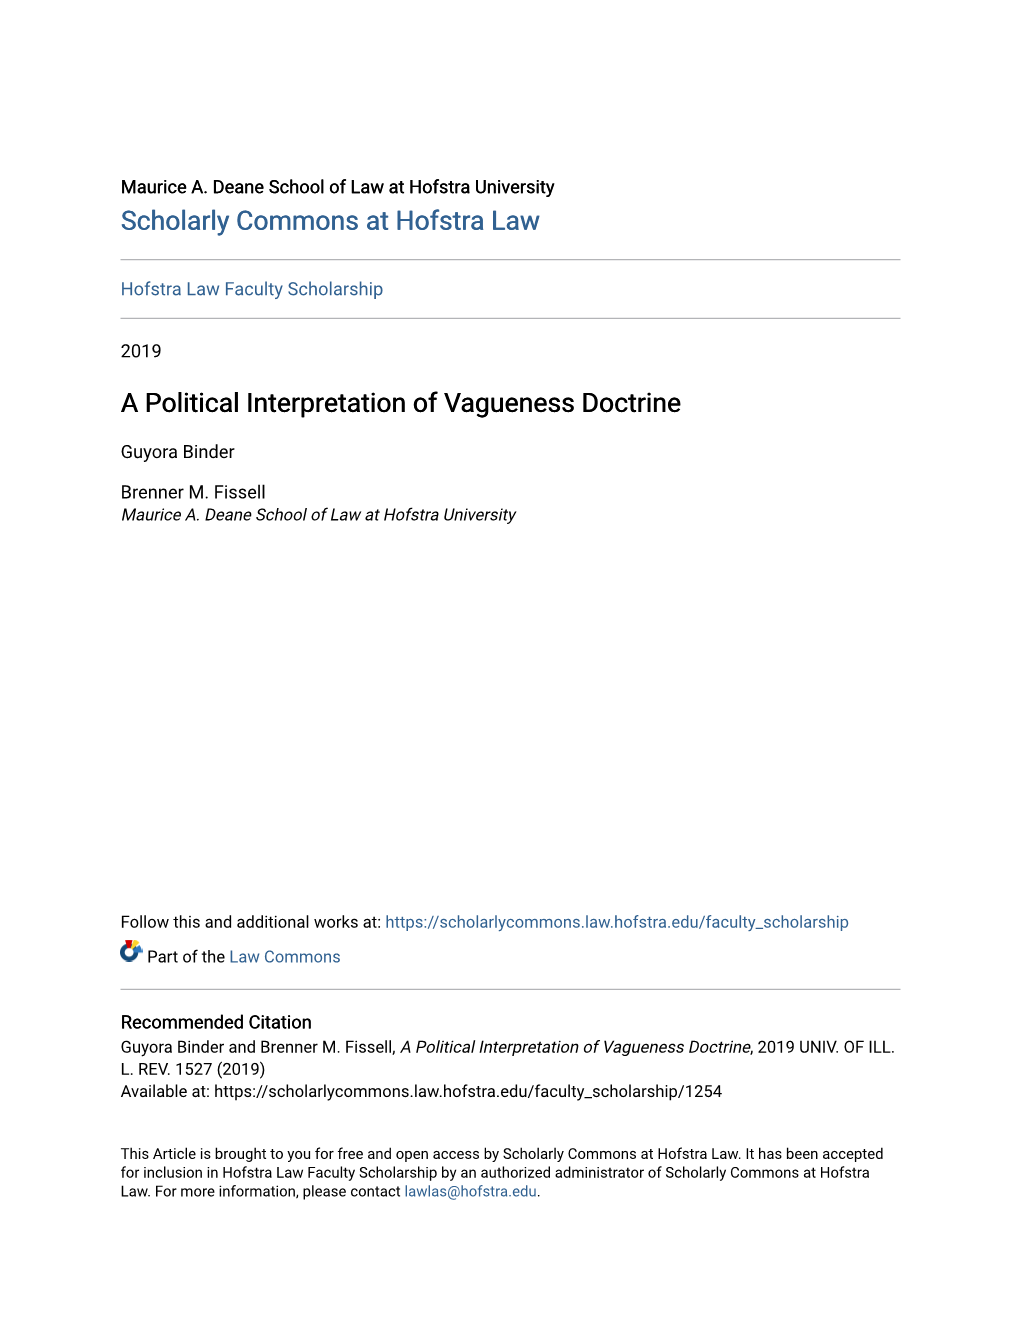 A Political Interpretation of Vagueness Doctrine